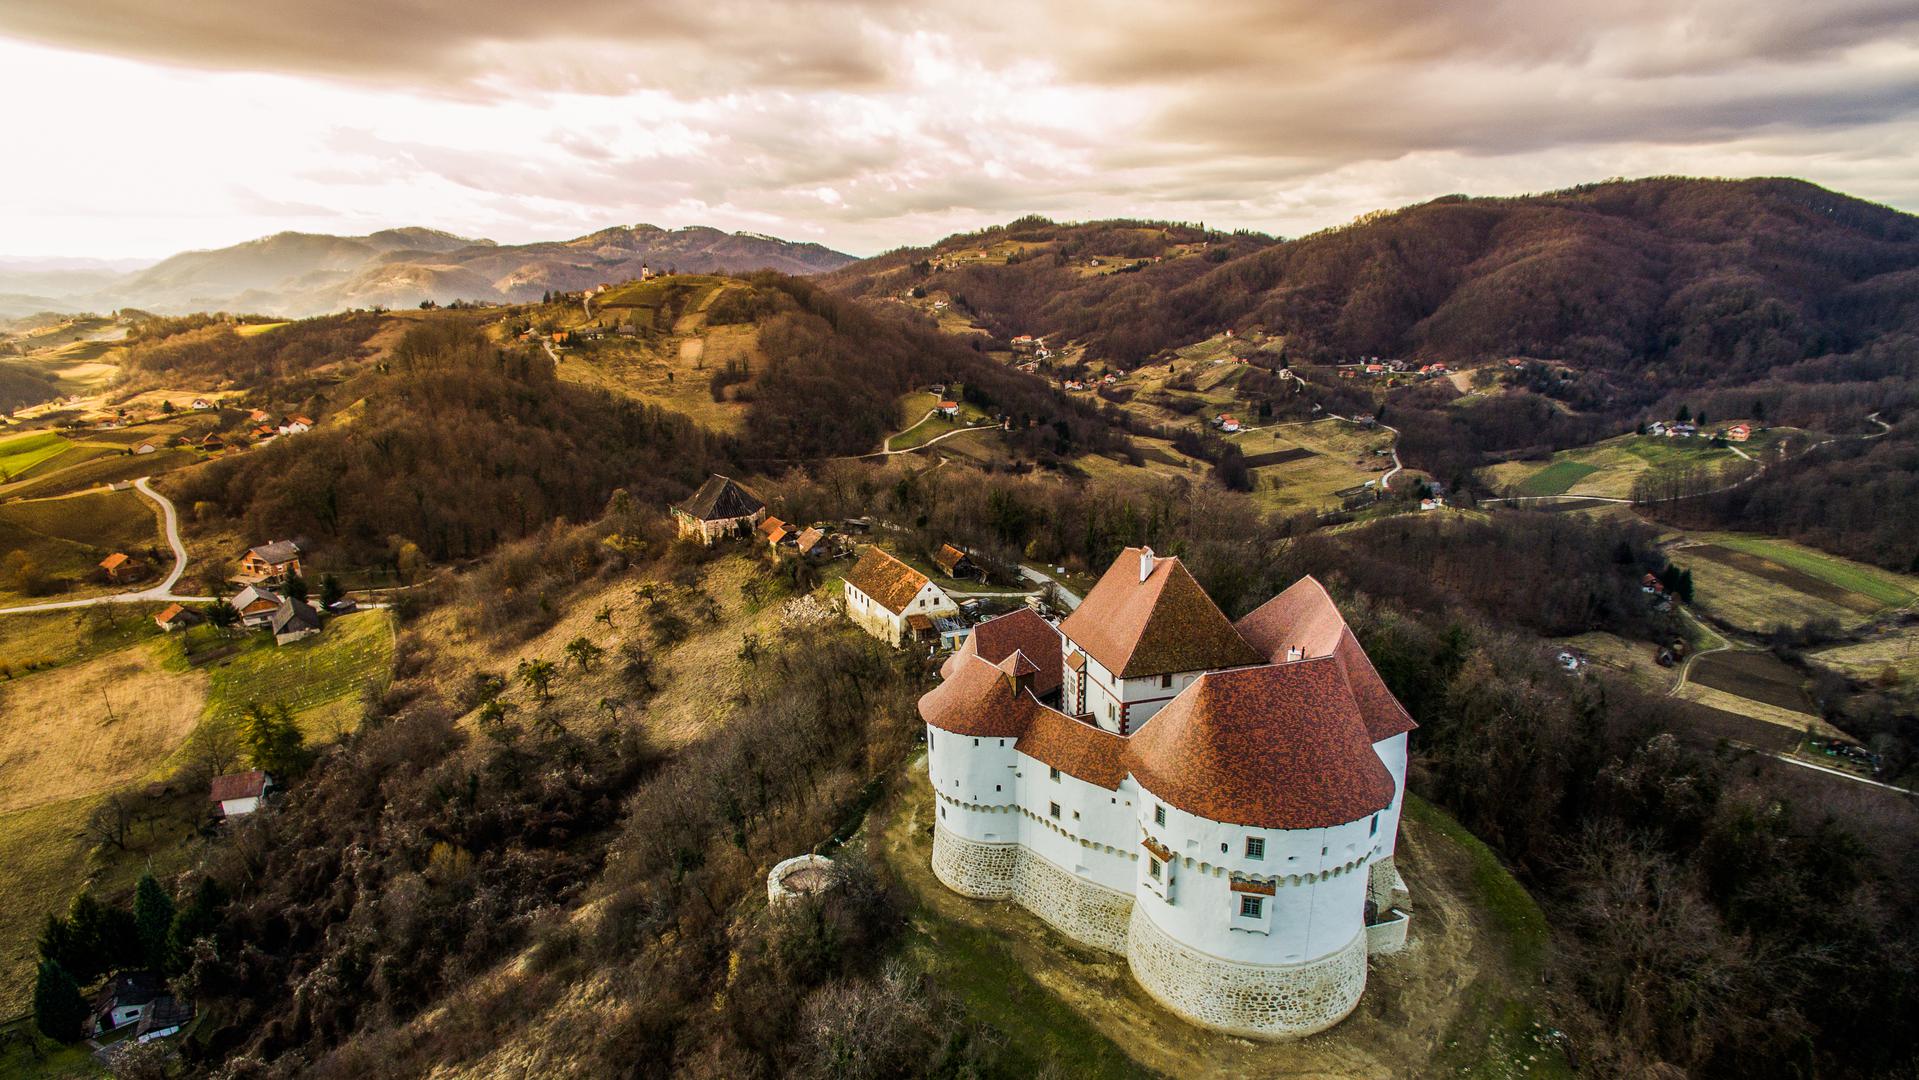 Dvorac Veliki Tabor stoji na 333 metara nadmorske visine već više od petsto godina, a pogled s njegovih zidina pruža se i do Slovenije. Najdulje je njime gospodarila obitelj Rattkay, a živio je tamo i slikar Oton Iveković